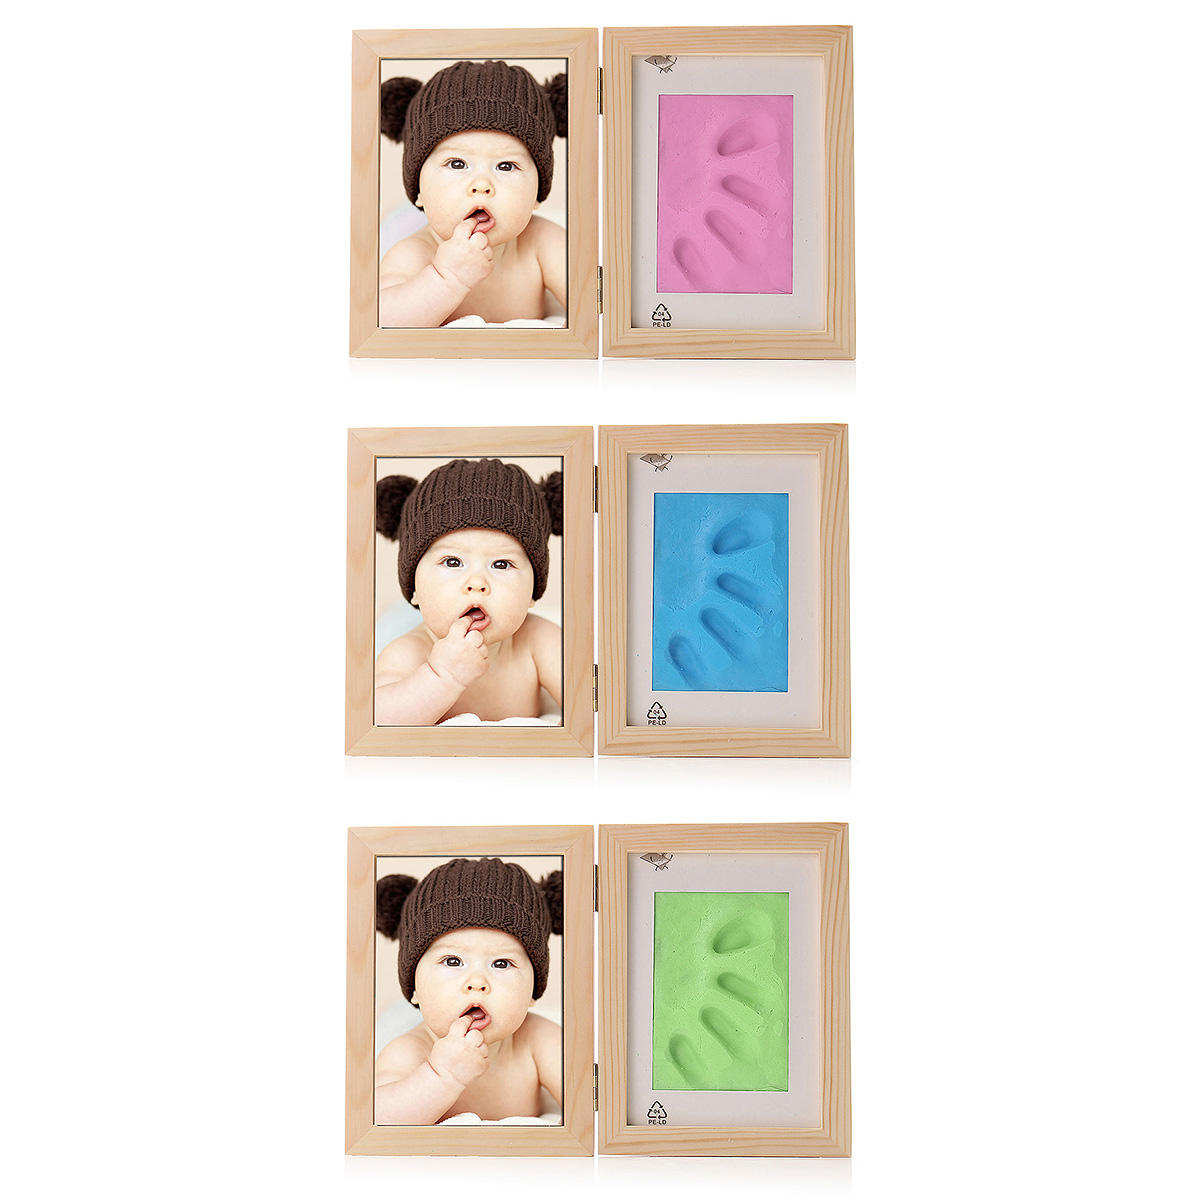 Pasgeboren baby handvoetafdruk Soft Clay fotolijst